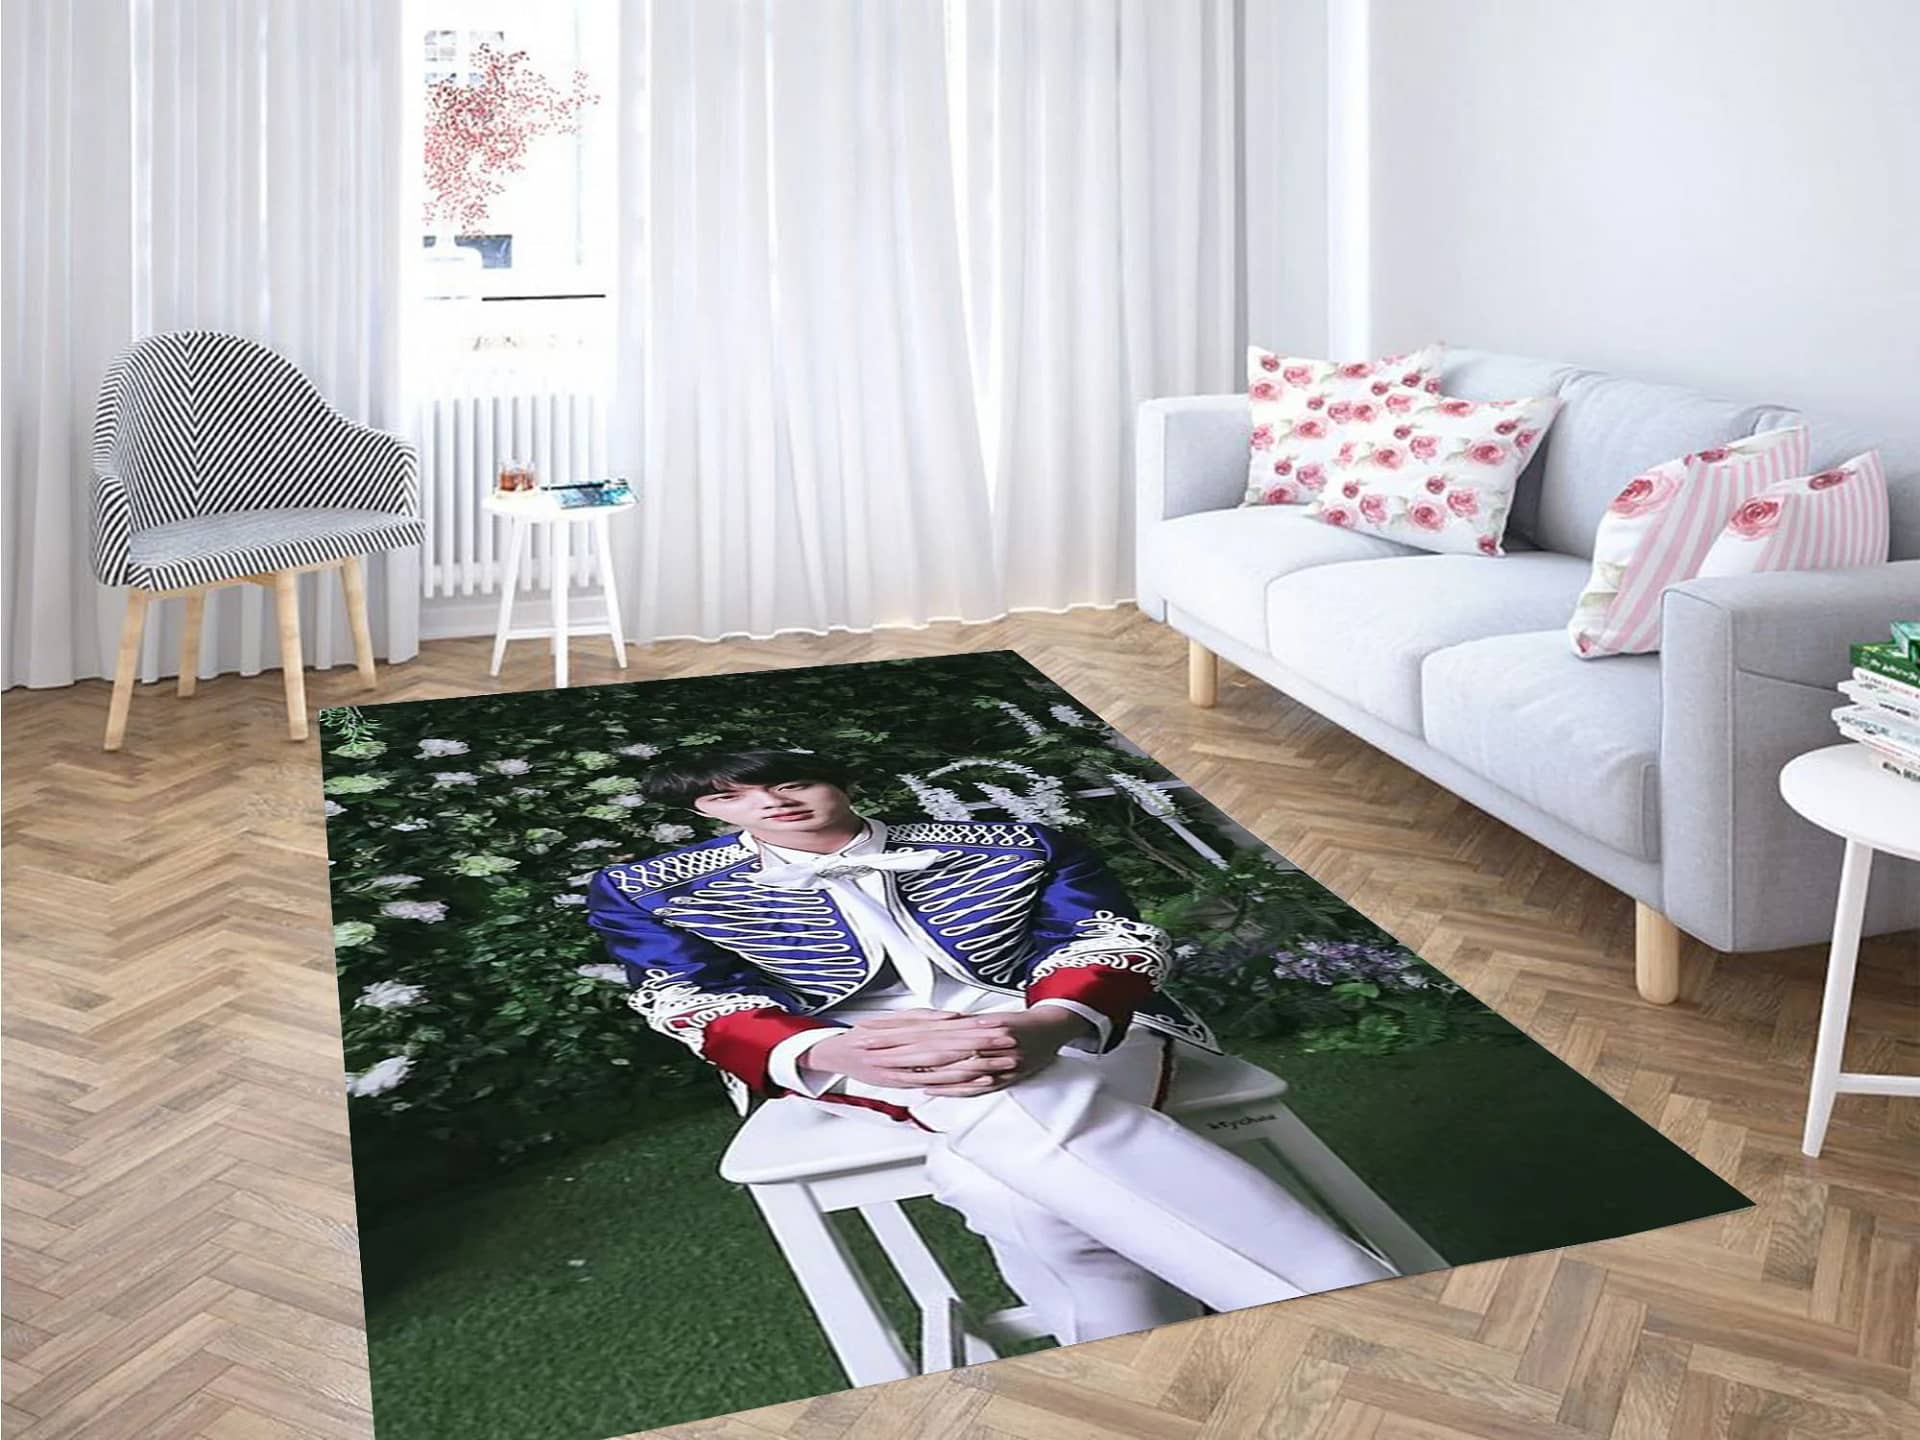 Jin Bts Carpet Rug